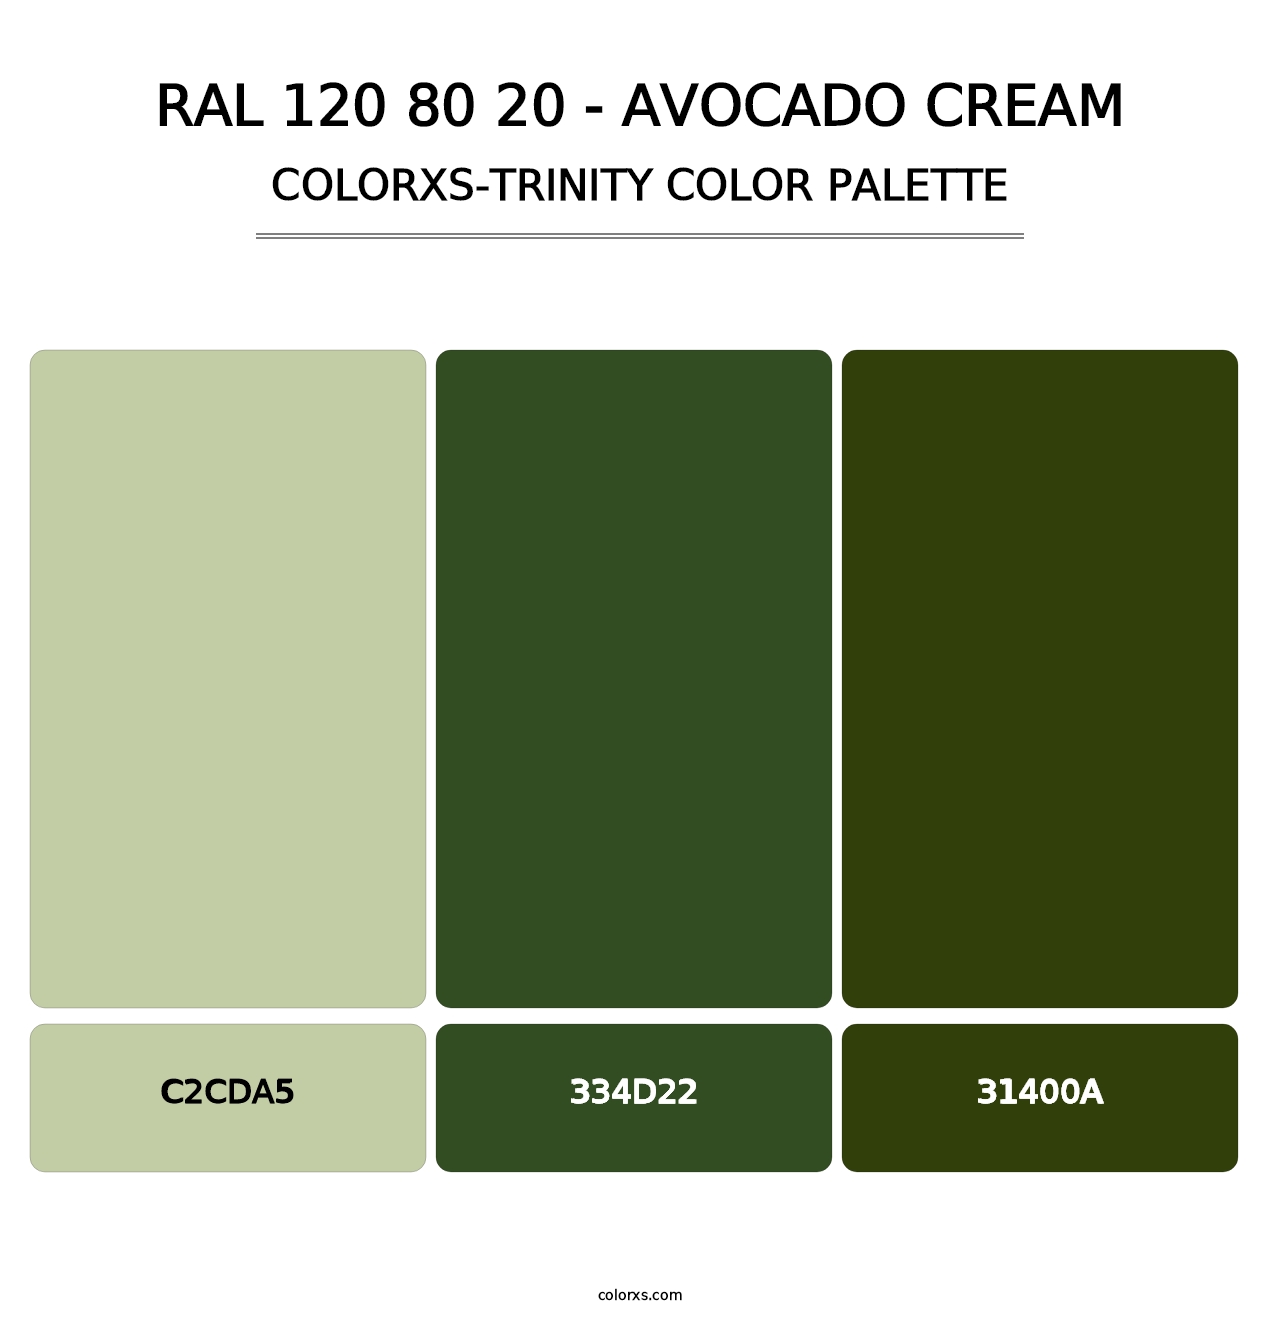 RAL 120 80 20 - Avocado Cream - Colorxs Trinity Palette